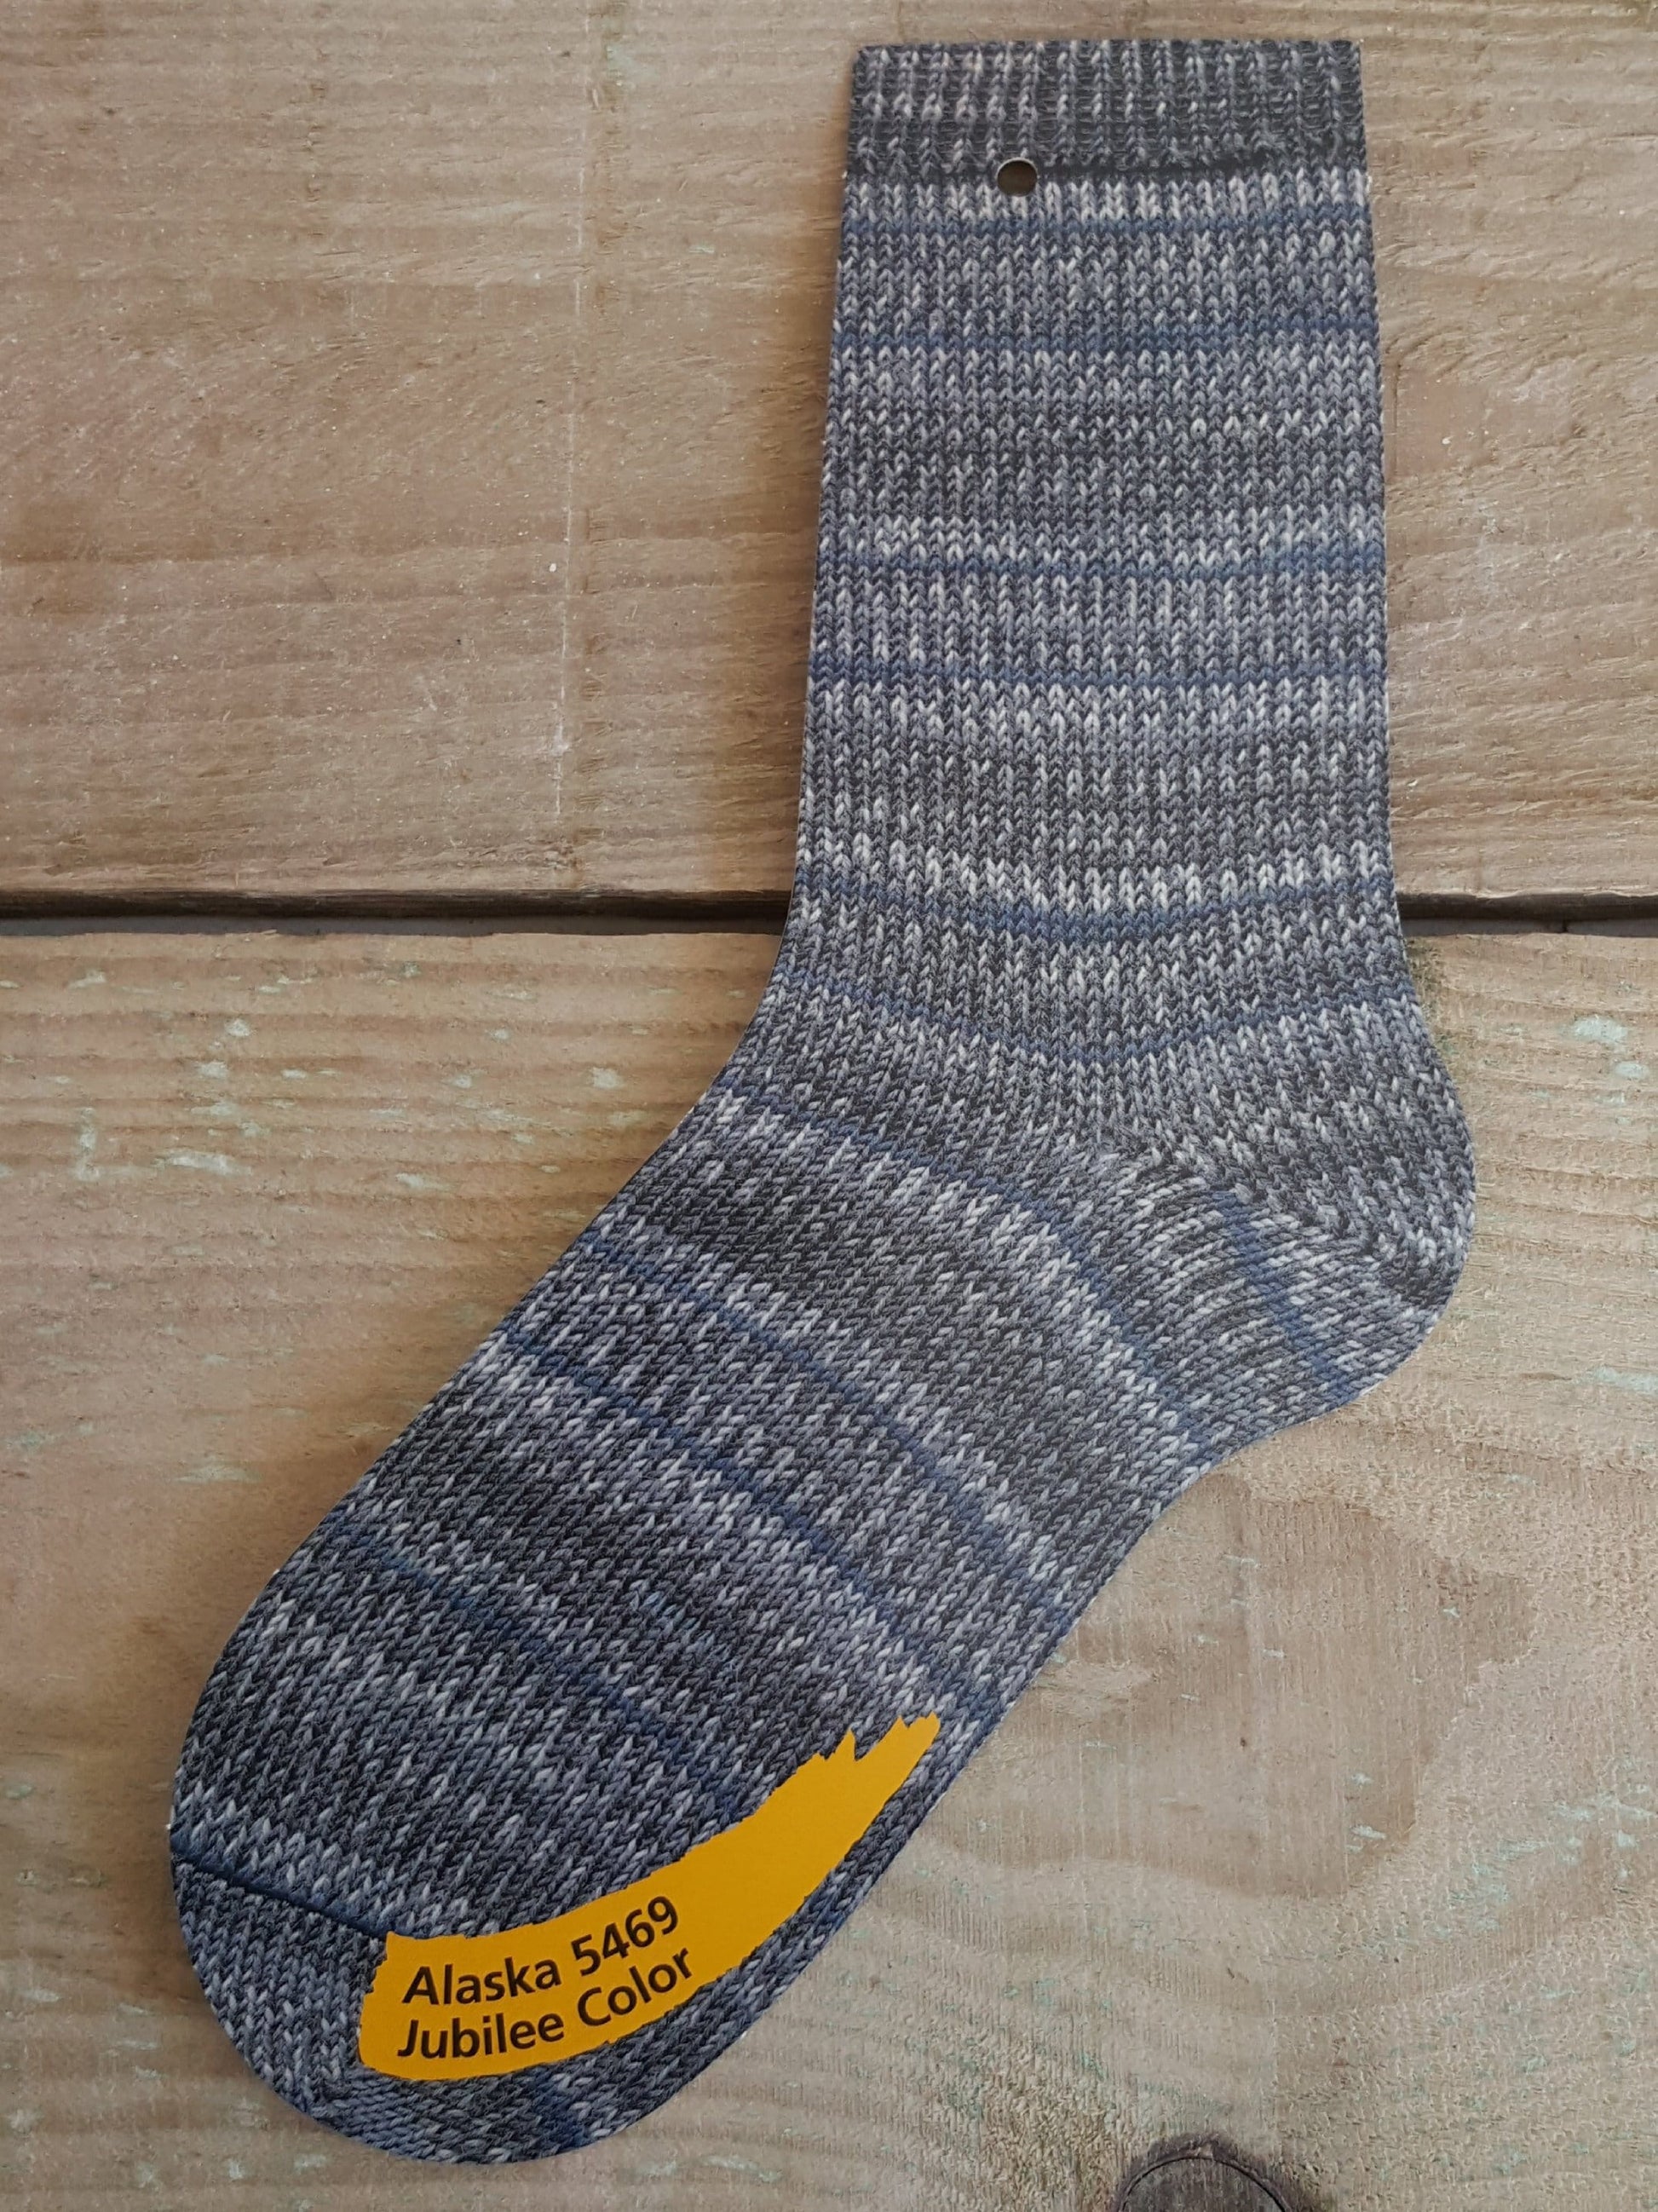 Self Patterning Sock Yarn, Regia 4 Ply, Jubilee Color, Alaska 5469, 100g